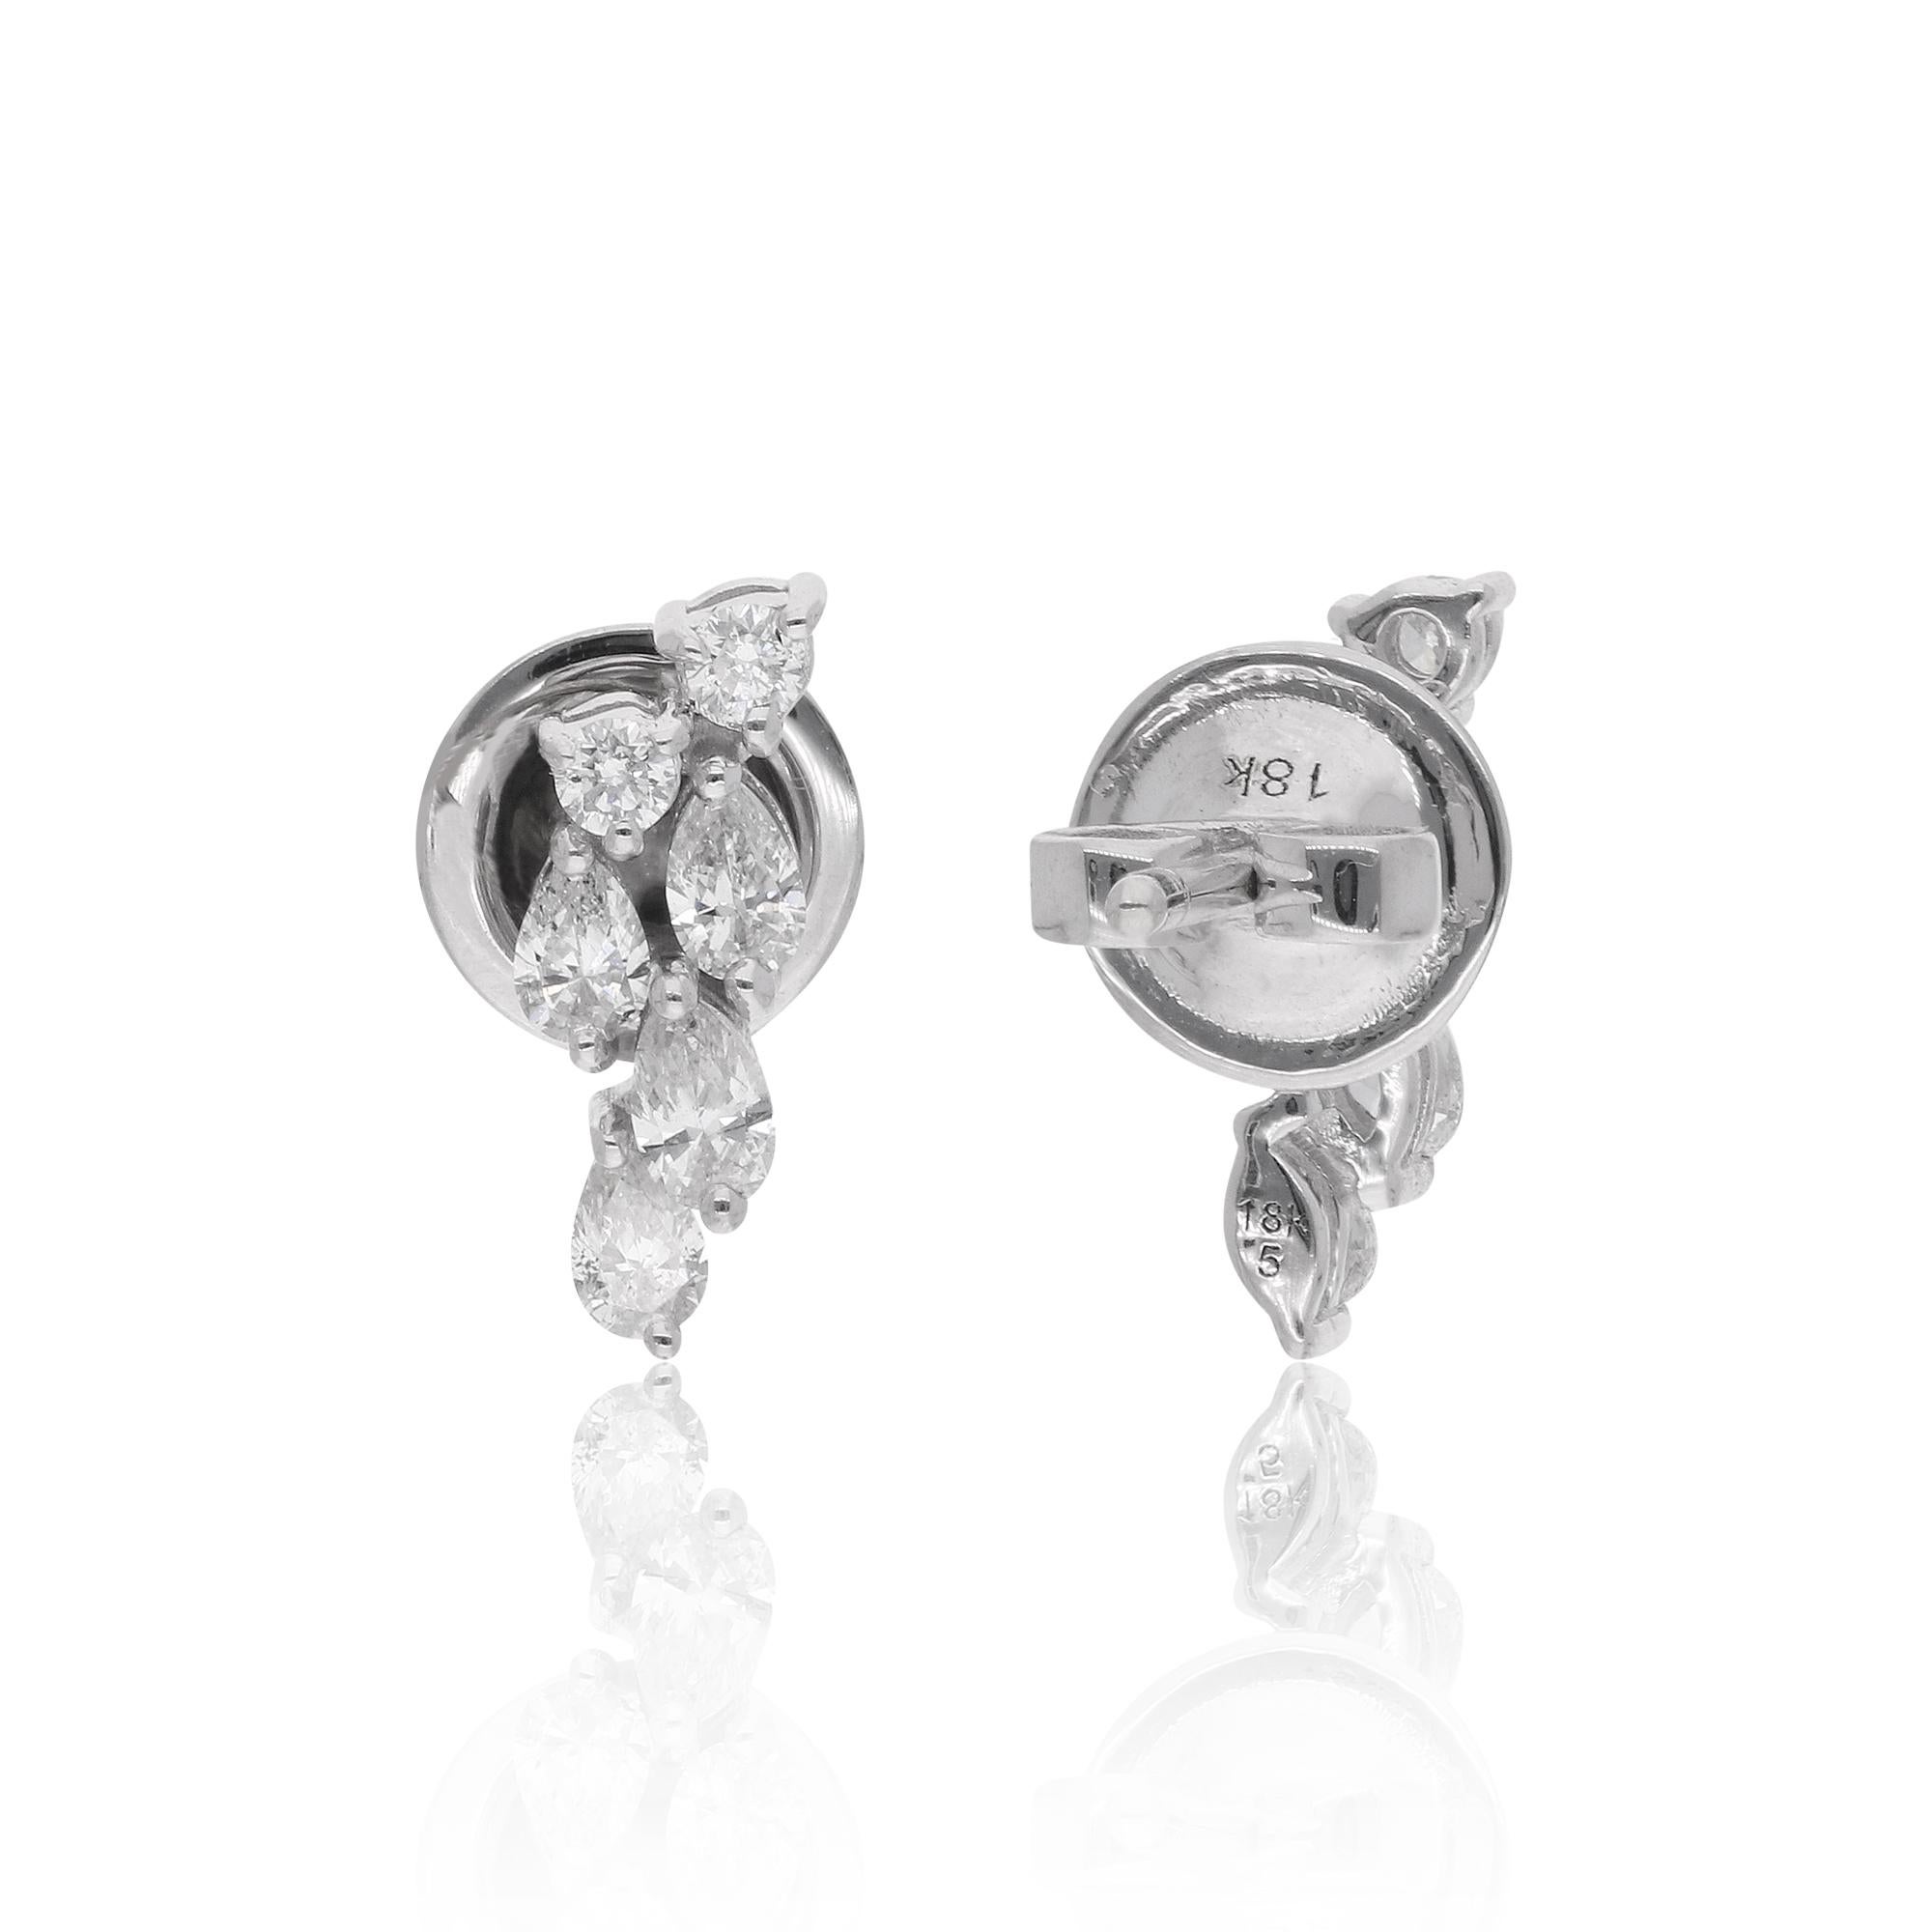 Gönnen Sie sich die zeitlose Eleganz dieser exquisiten 0,60-Karat-Ohrringe mit Birne und rundem Diamant, die mit viel Liebe zum Detail in 18 Karat Weißgold gefertigt wurden. Diese bezaubernden Ohrringe sind ein Zeugnis für die Kunstfertigkeit und